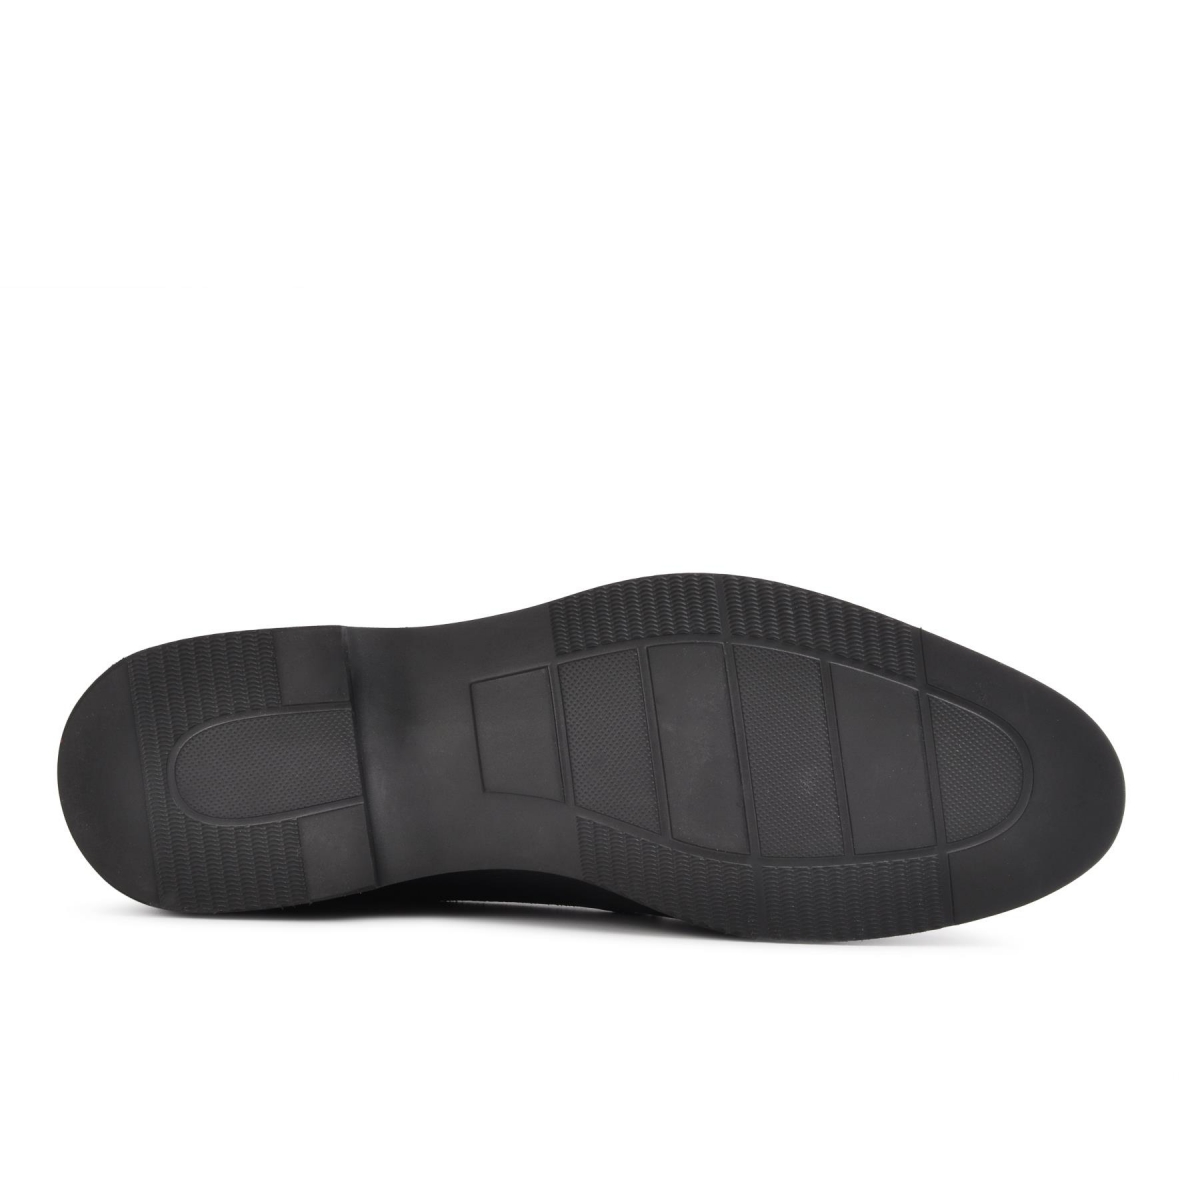 Flo 2583 Siyah-Siyah Rugan Hakiki Deri Erkek Klasik Ayakkabı. 5